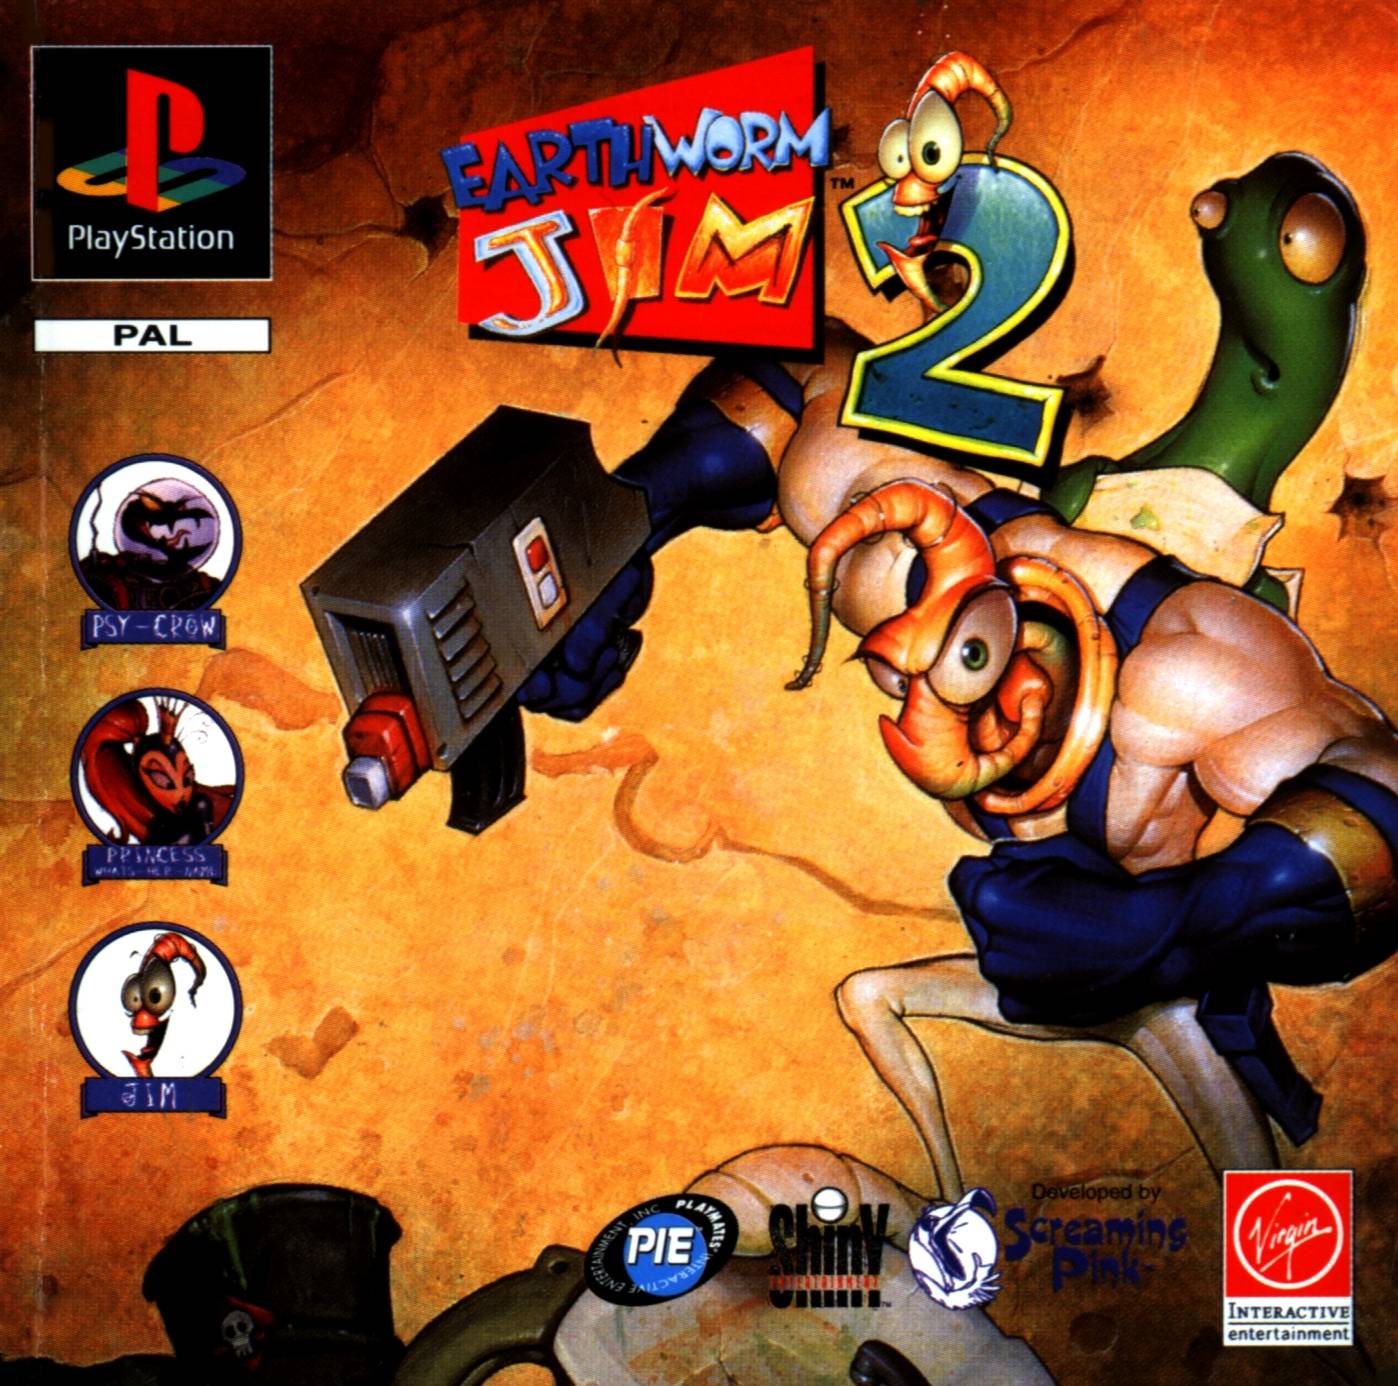 Earthworm Jim 2（アースワームジム2）【・GBA欧州版】 - 携帯用ゲーム 